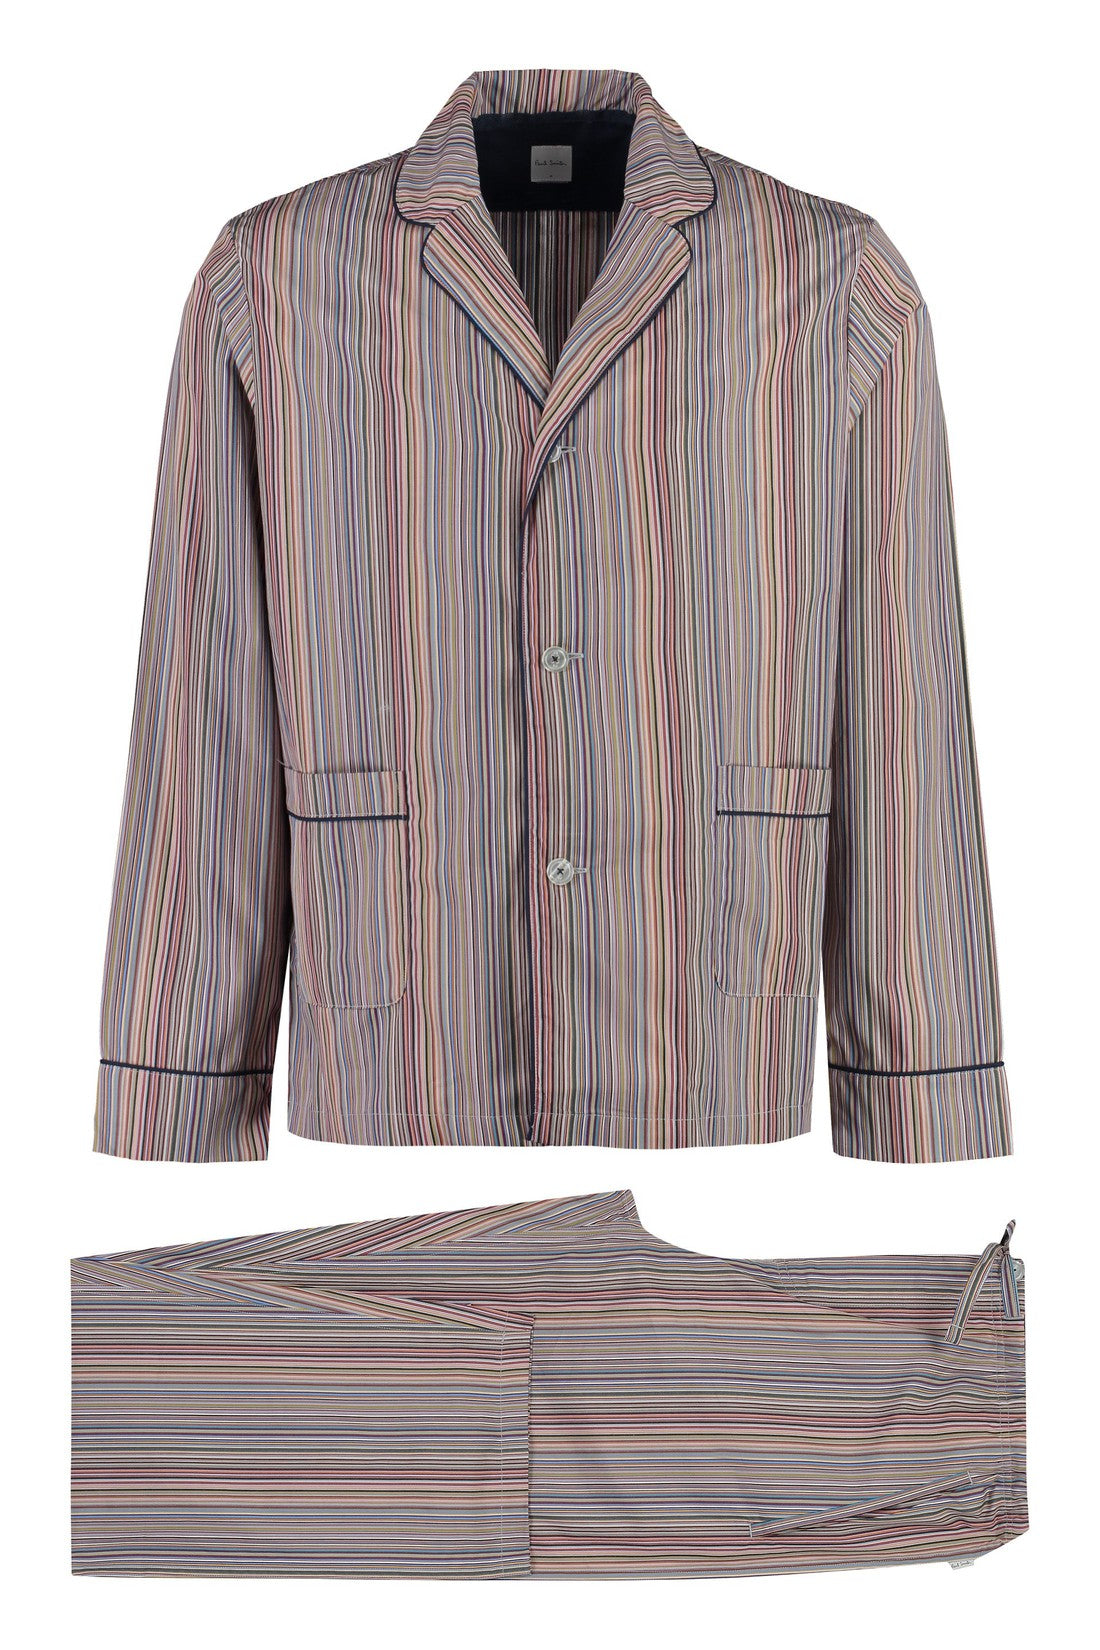 Paul Smith-OUTLET-SALE-Striped cotton pyjamas-ARCHIVIST